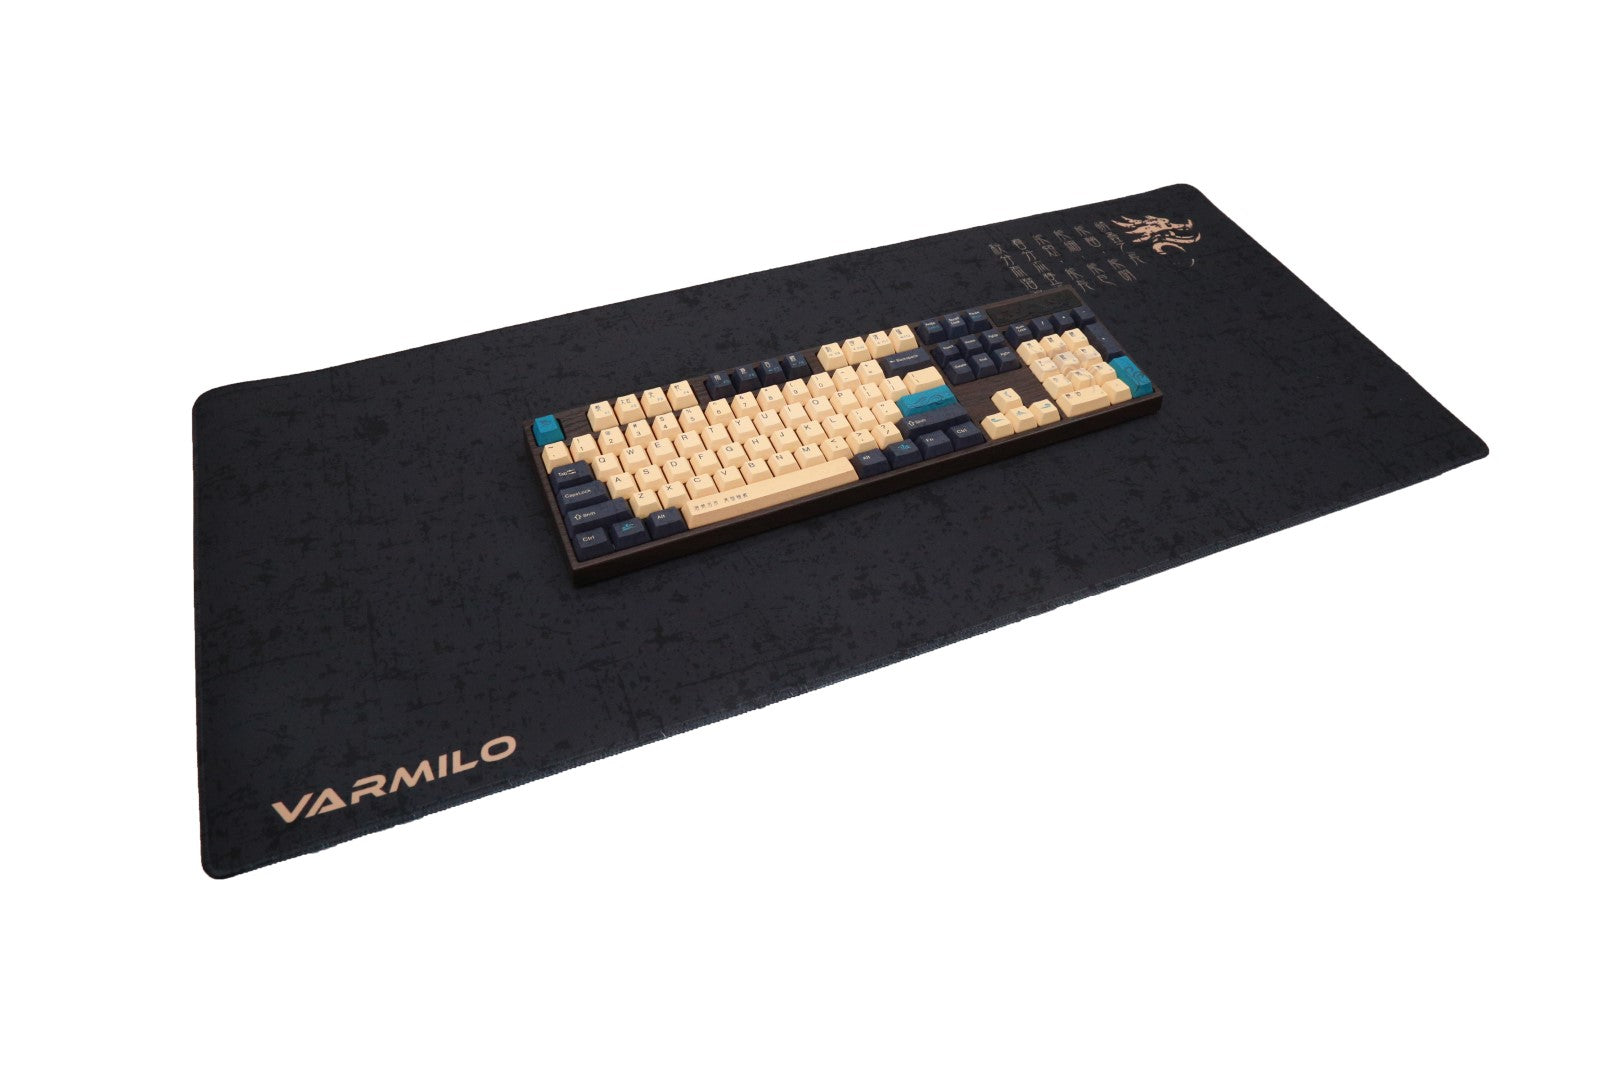 Varmilo Loong XL Desk Mat MKTD86CP70 |42498|